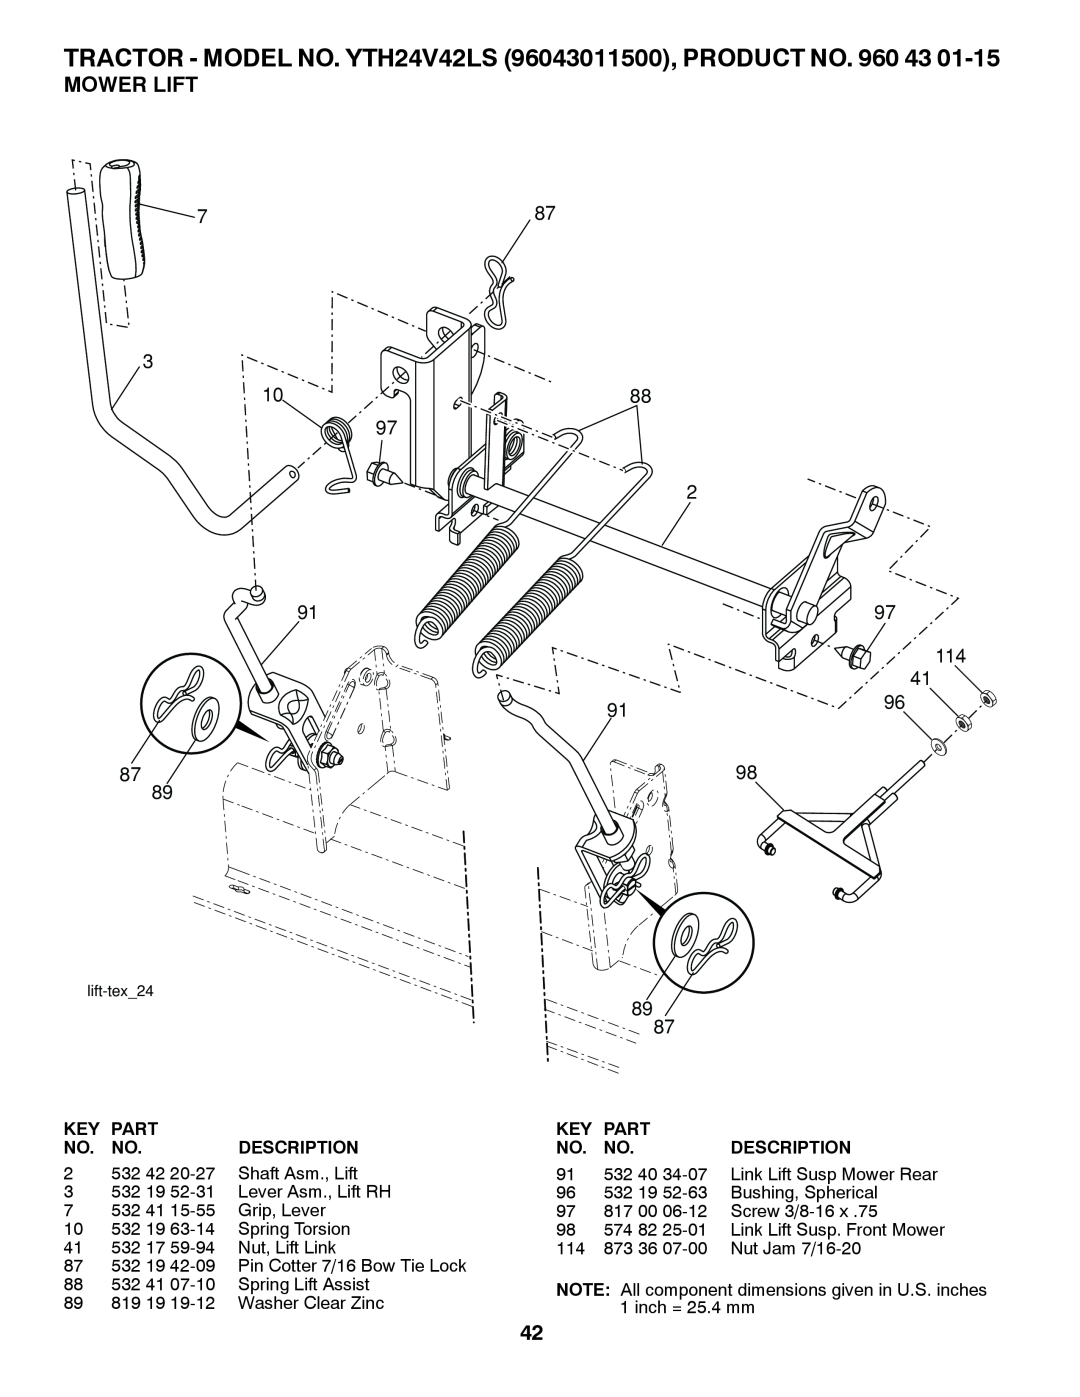 Husqvarna owner manual Mower Lift, TRACTOR - MODEL NO. YTH24V42LS 96043011500, PRODUCT NO. 960 43, Part, Description 